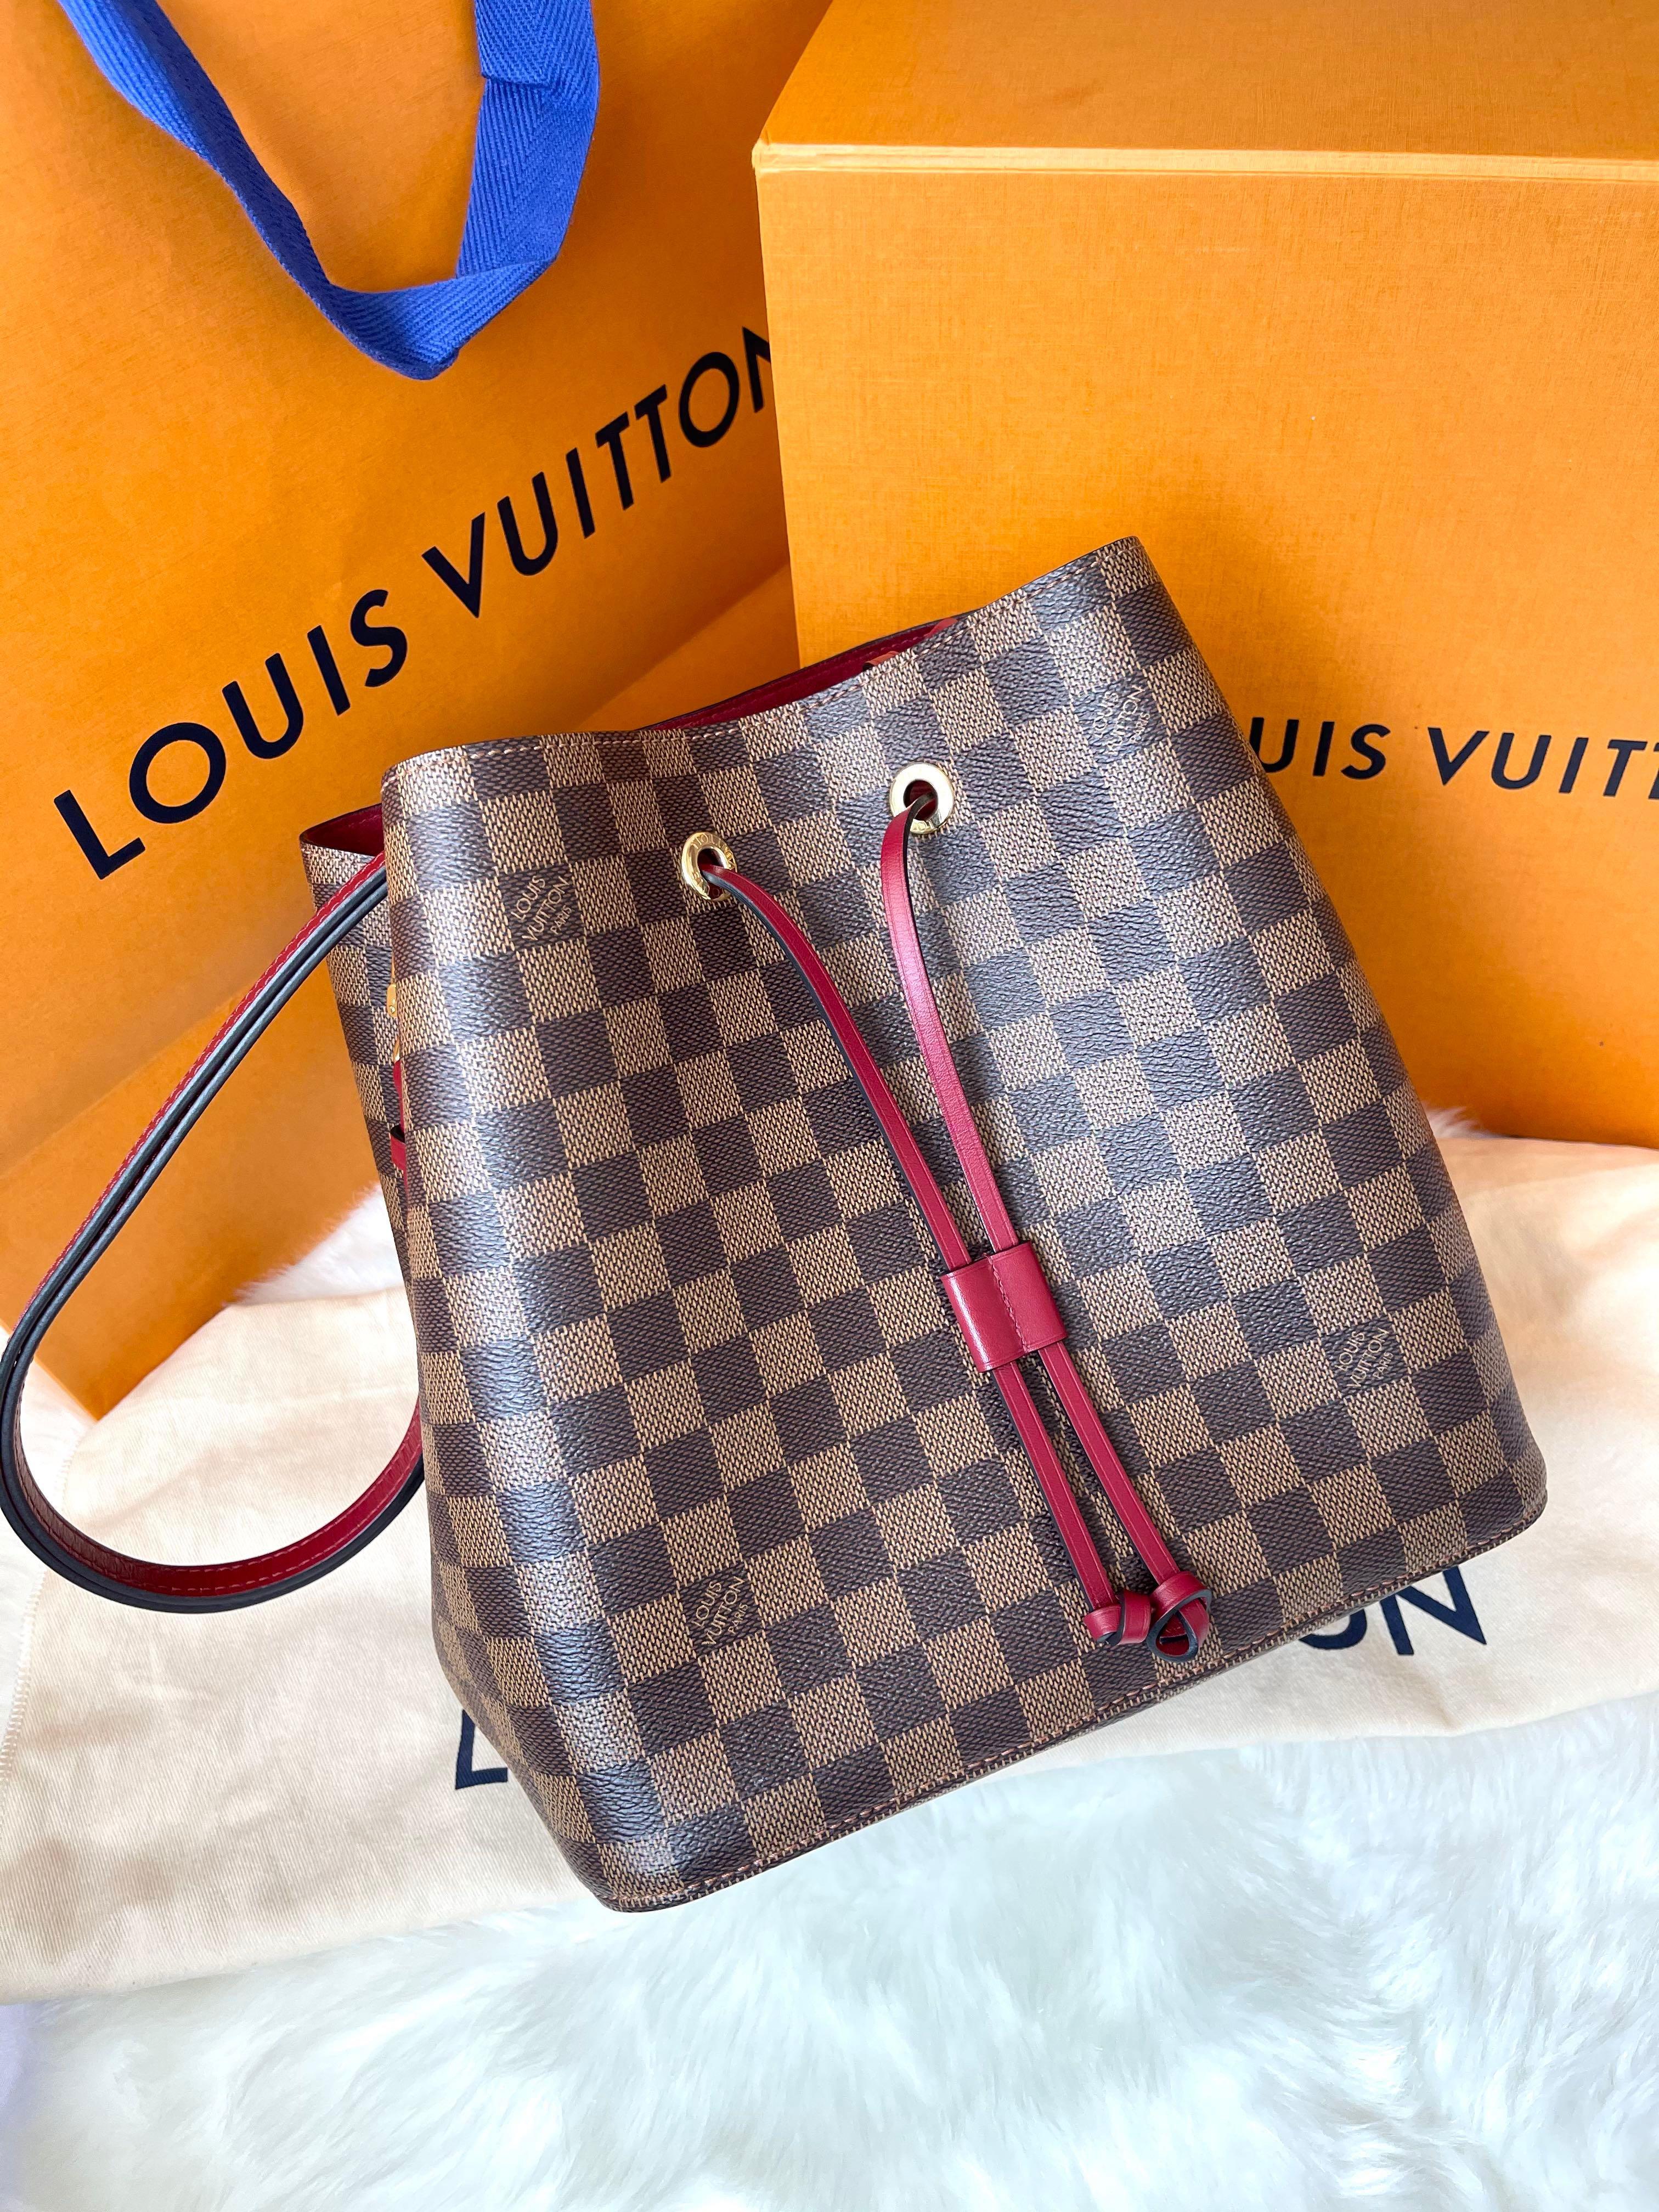 Authentic Louis Vuitton NeoNoe Damier Ebene Cherry Berry, Luxury